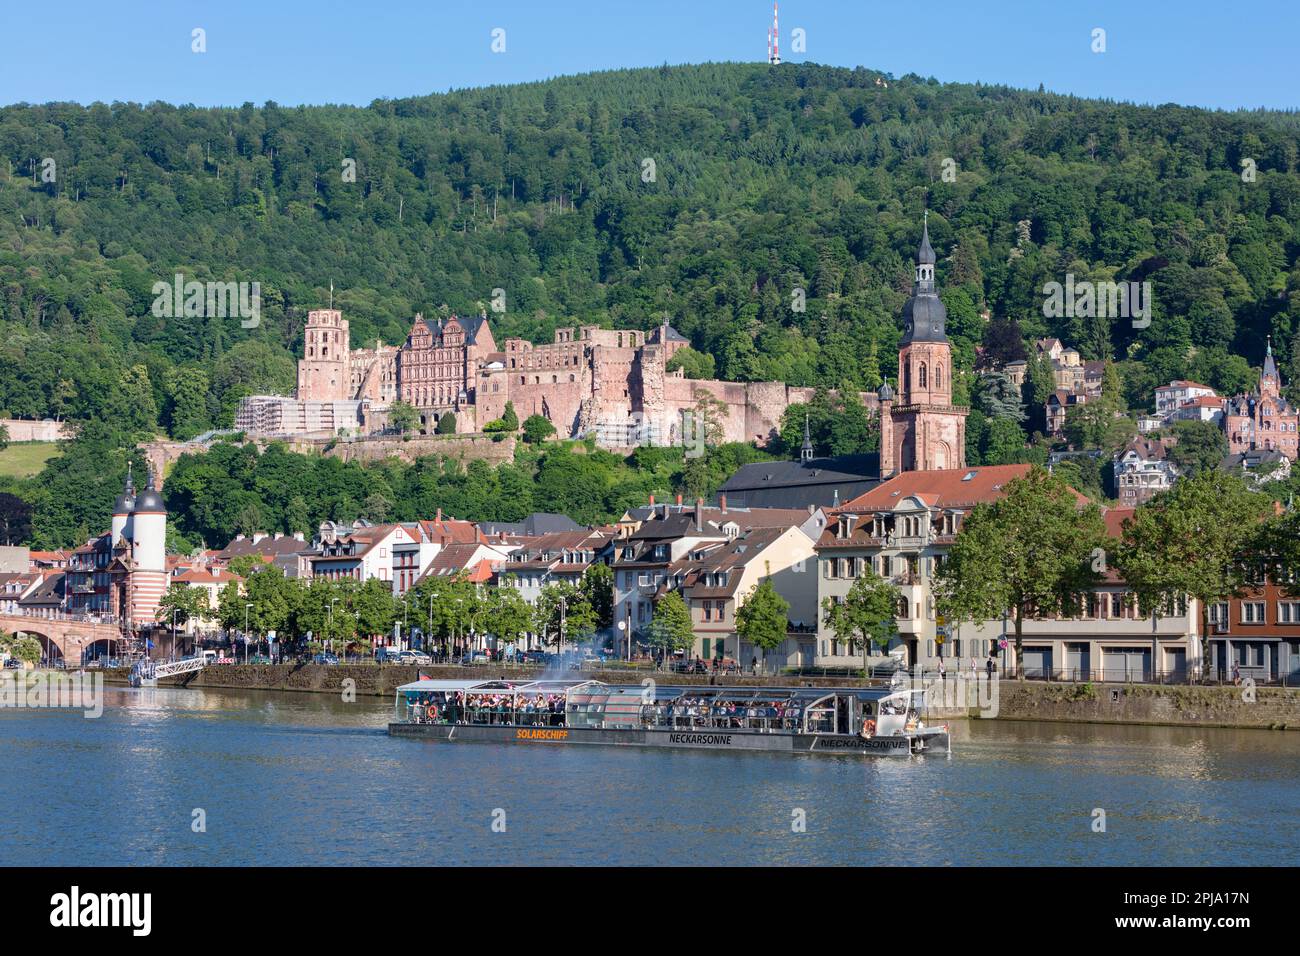 Lo storico castello rinascimentale di Heidelberg, risalente al XIII secolo, si affaccia sul centro storico e sul fiume Neckar nella valle del Neckar. Heidelberg. Foto Stock